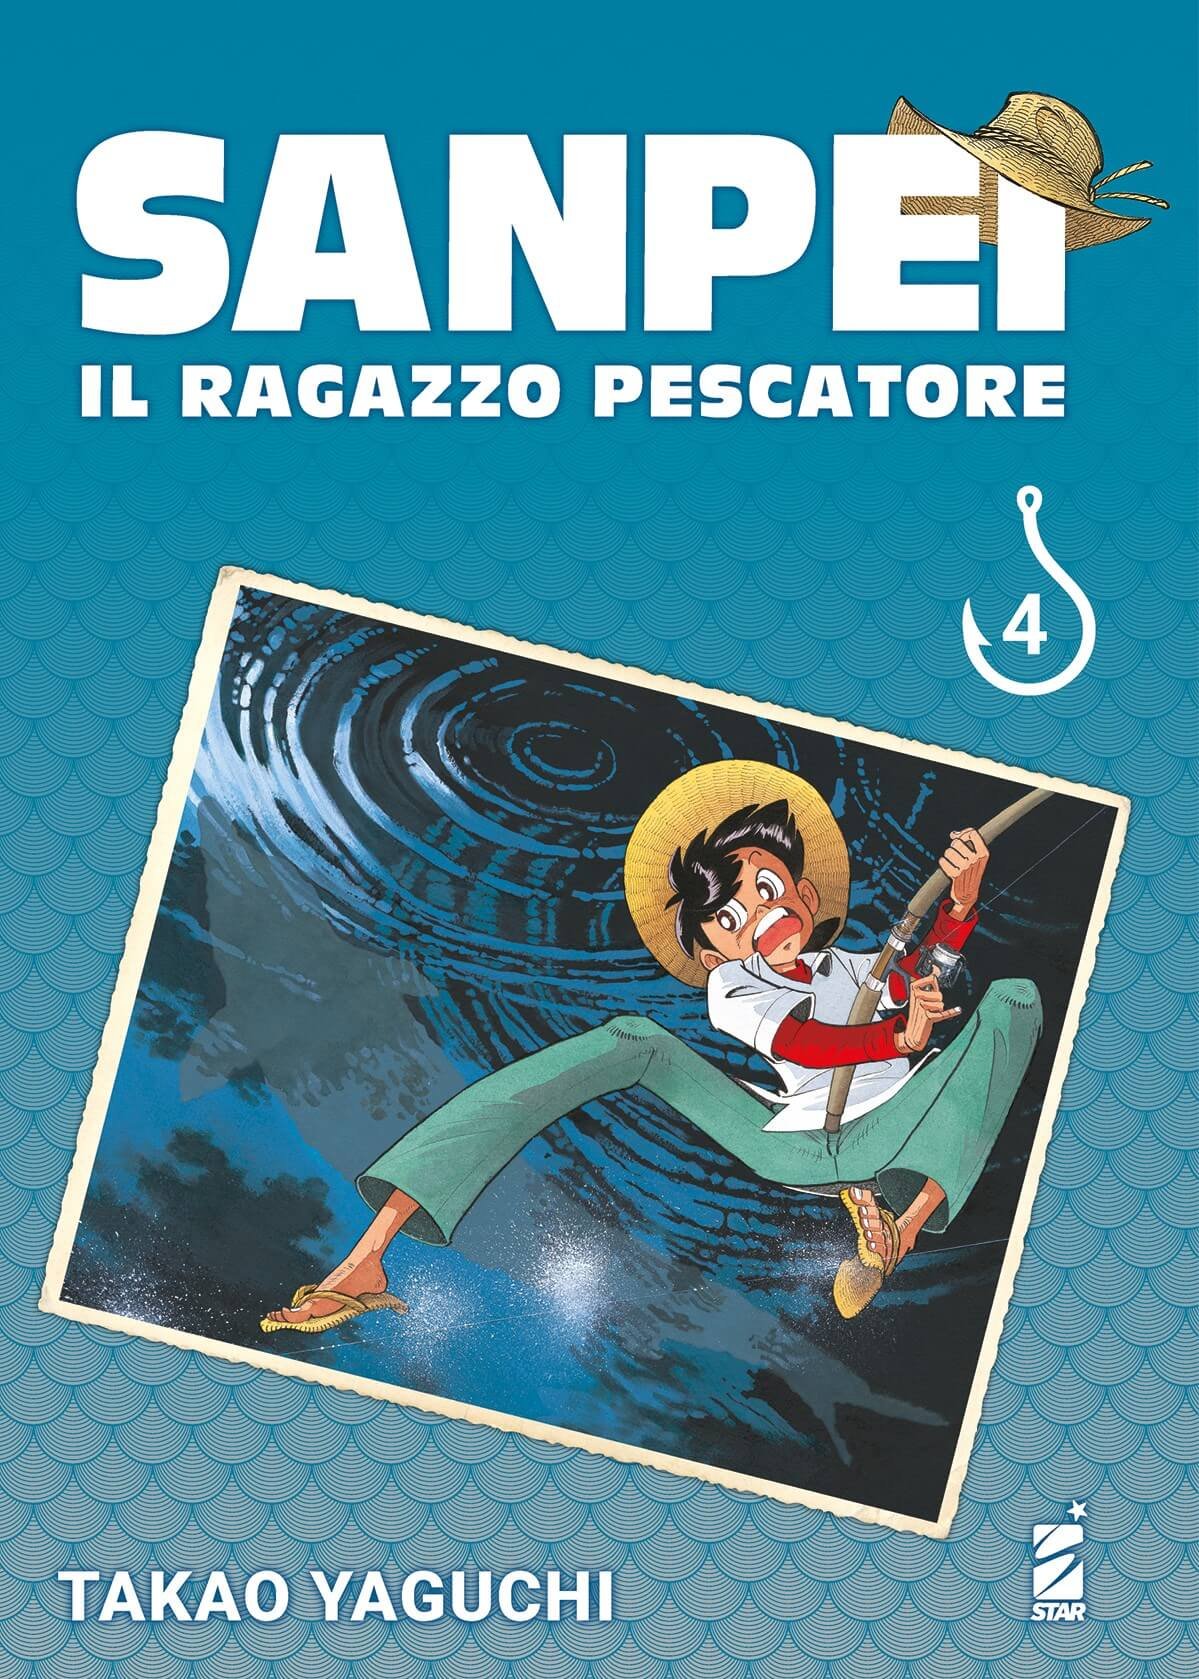 Sanpei Il Ragazzo Pescatore Tribute Edition 4, tra le uscite manga Star Comics del 18 gennaio 2023